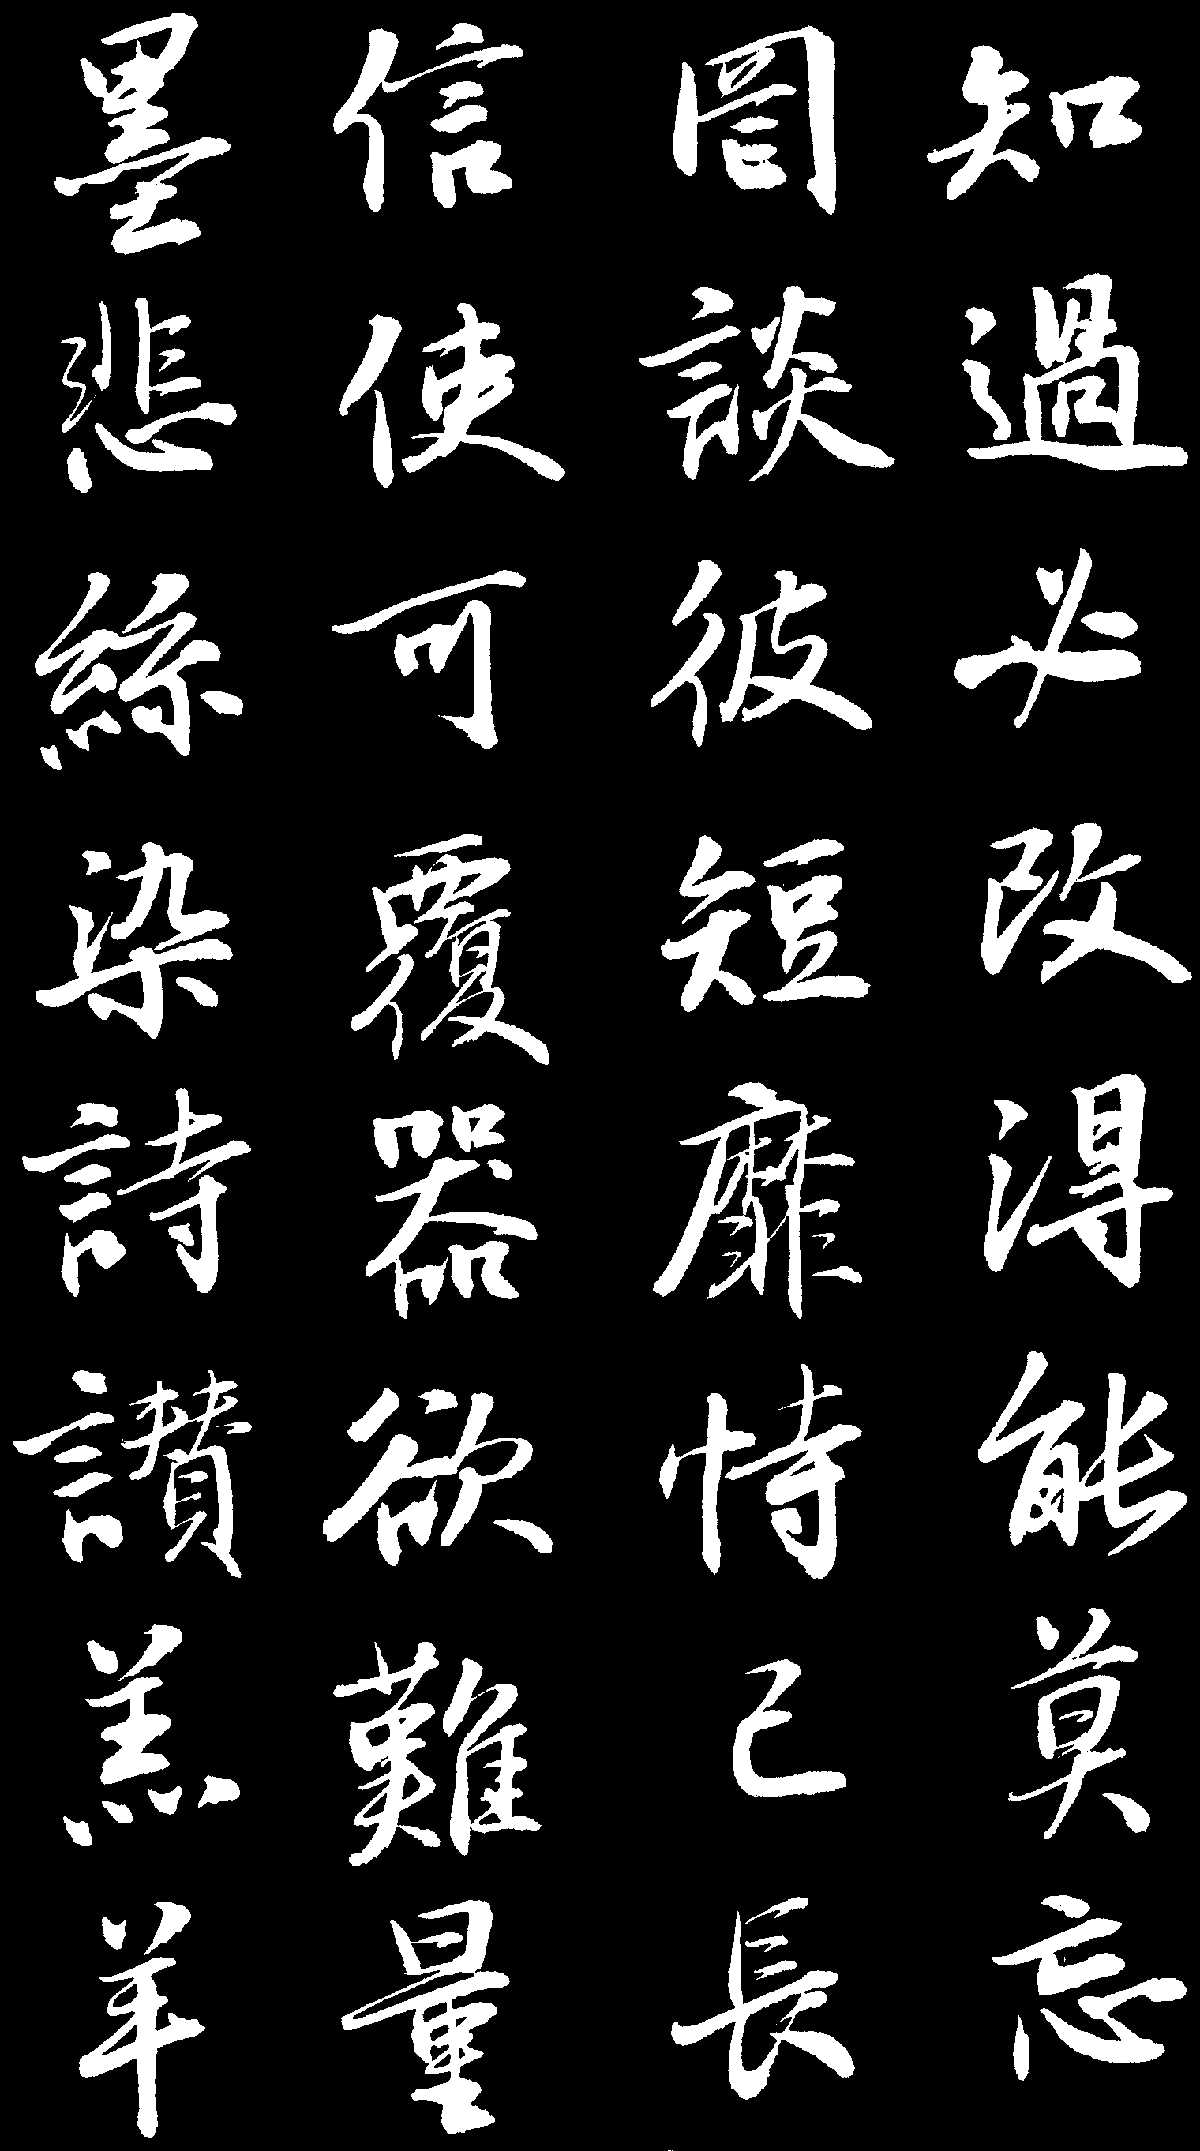 Образец письма "син шу", китайские иероглифы